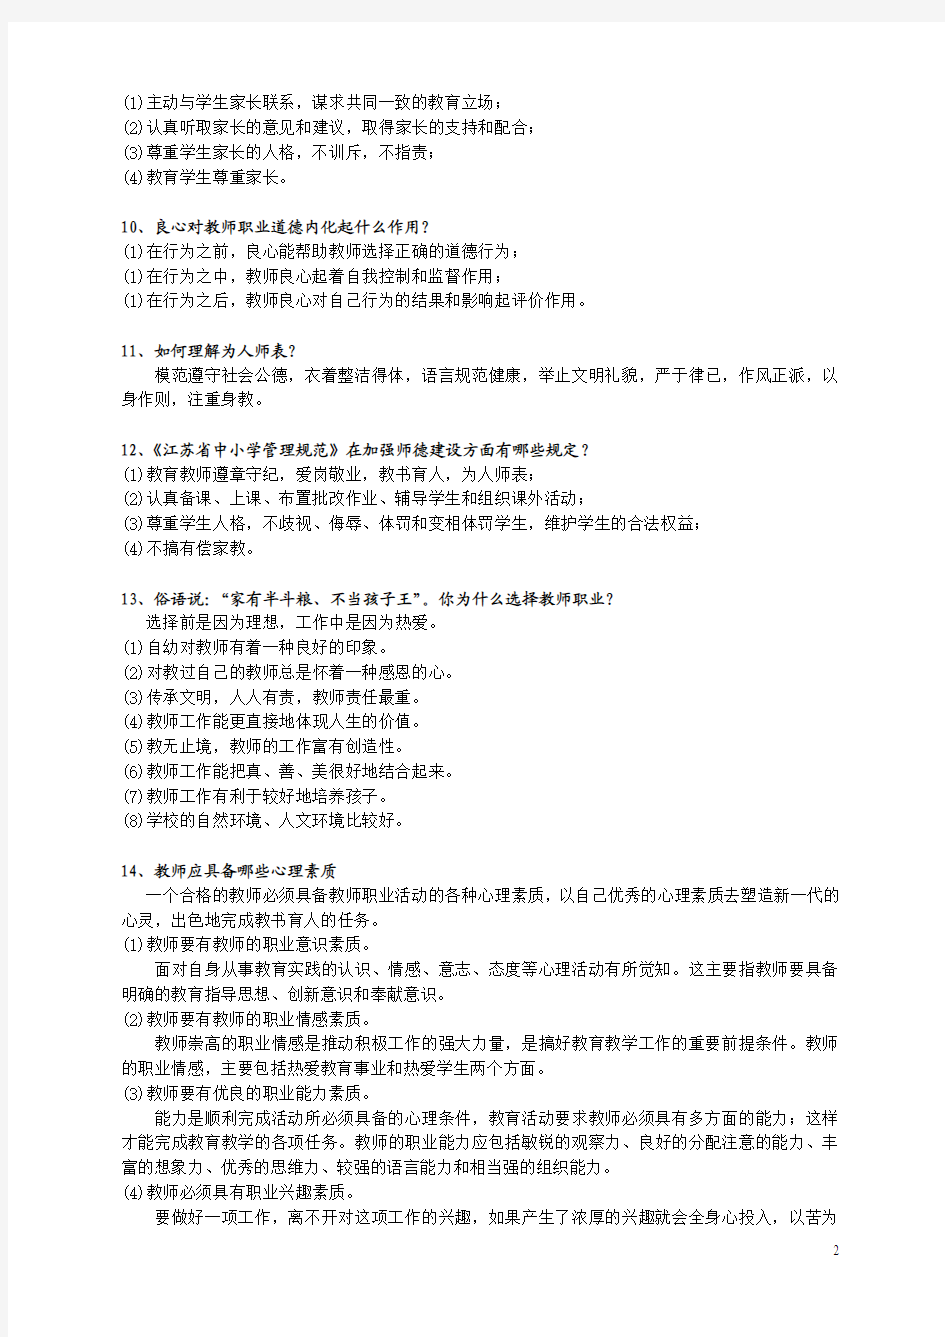 2011年徐州市中小学教师初定考试复习提纲及全答案(全)